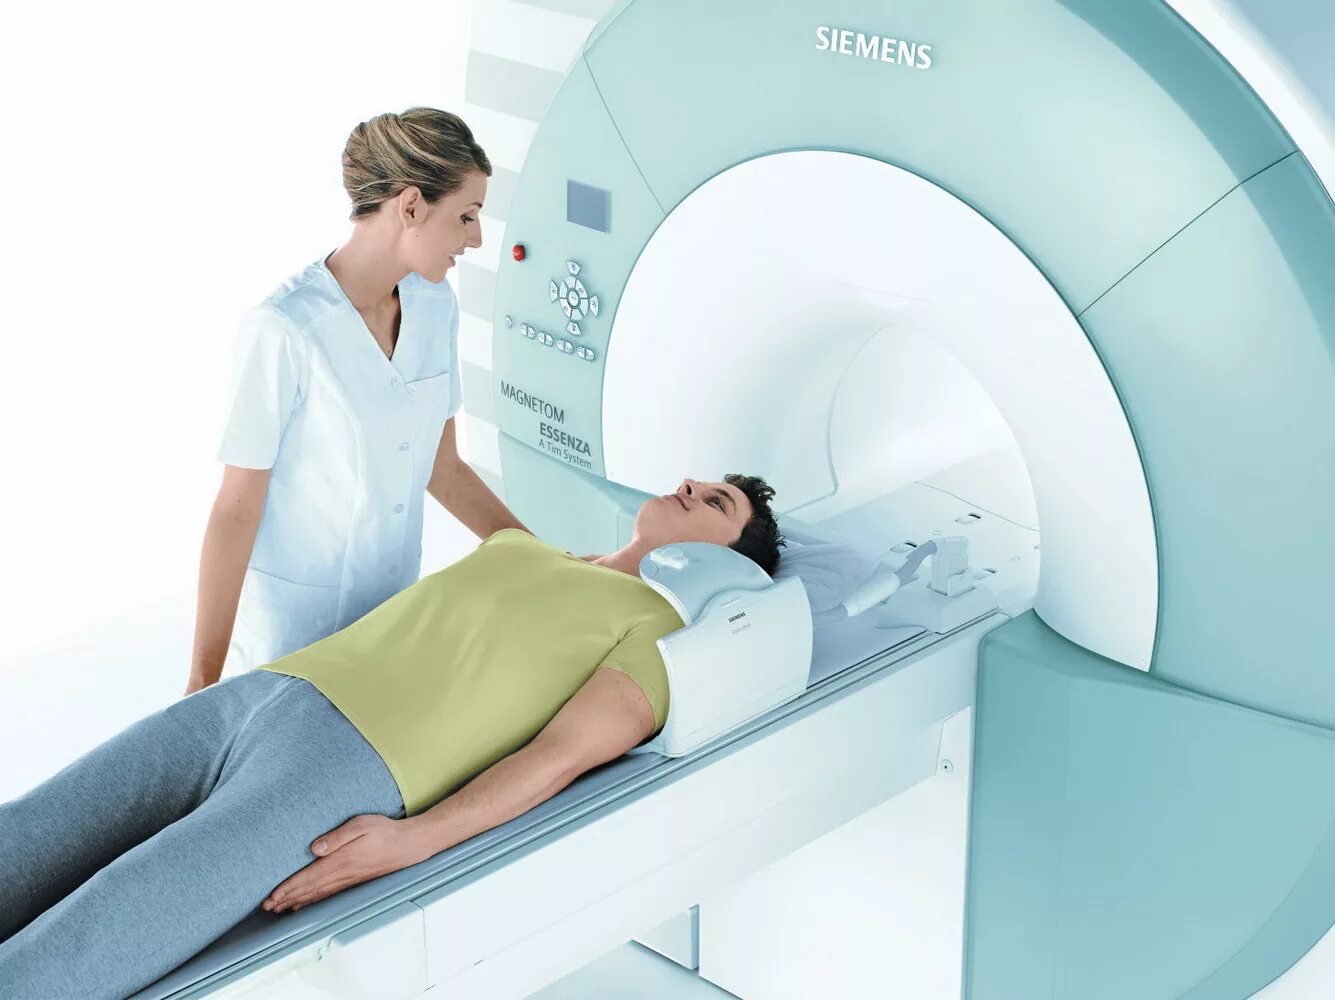 Мрт с седацией. Siemens MAGNETOM Essenza 1.5. Мрт томограф. Магнито-резонансный томограф. Магнитно-резонансная томография (мрт).